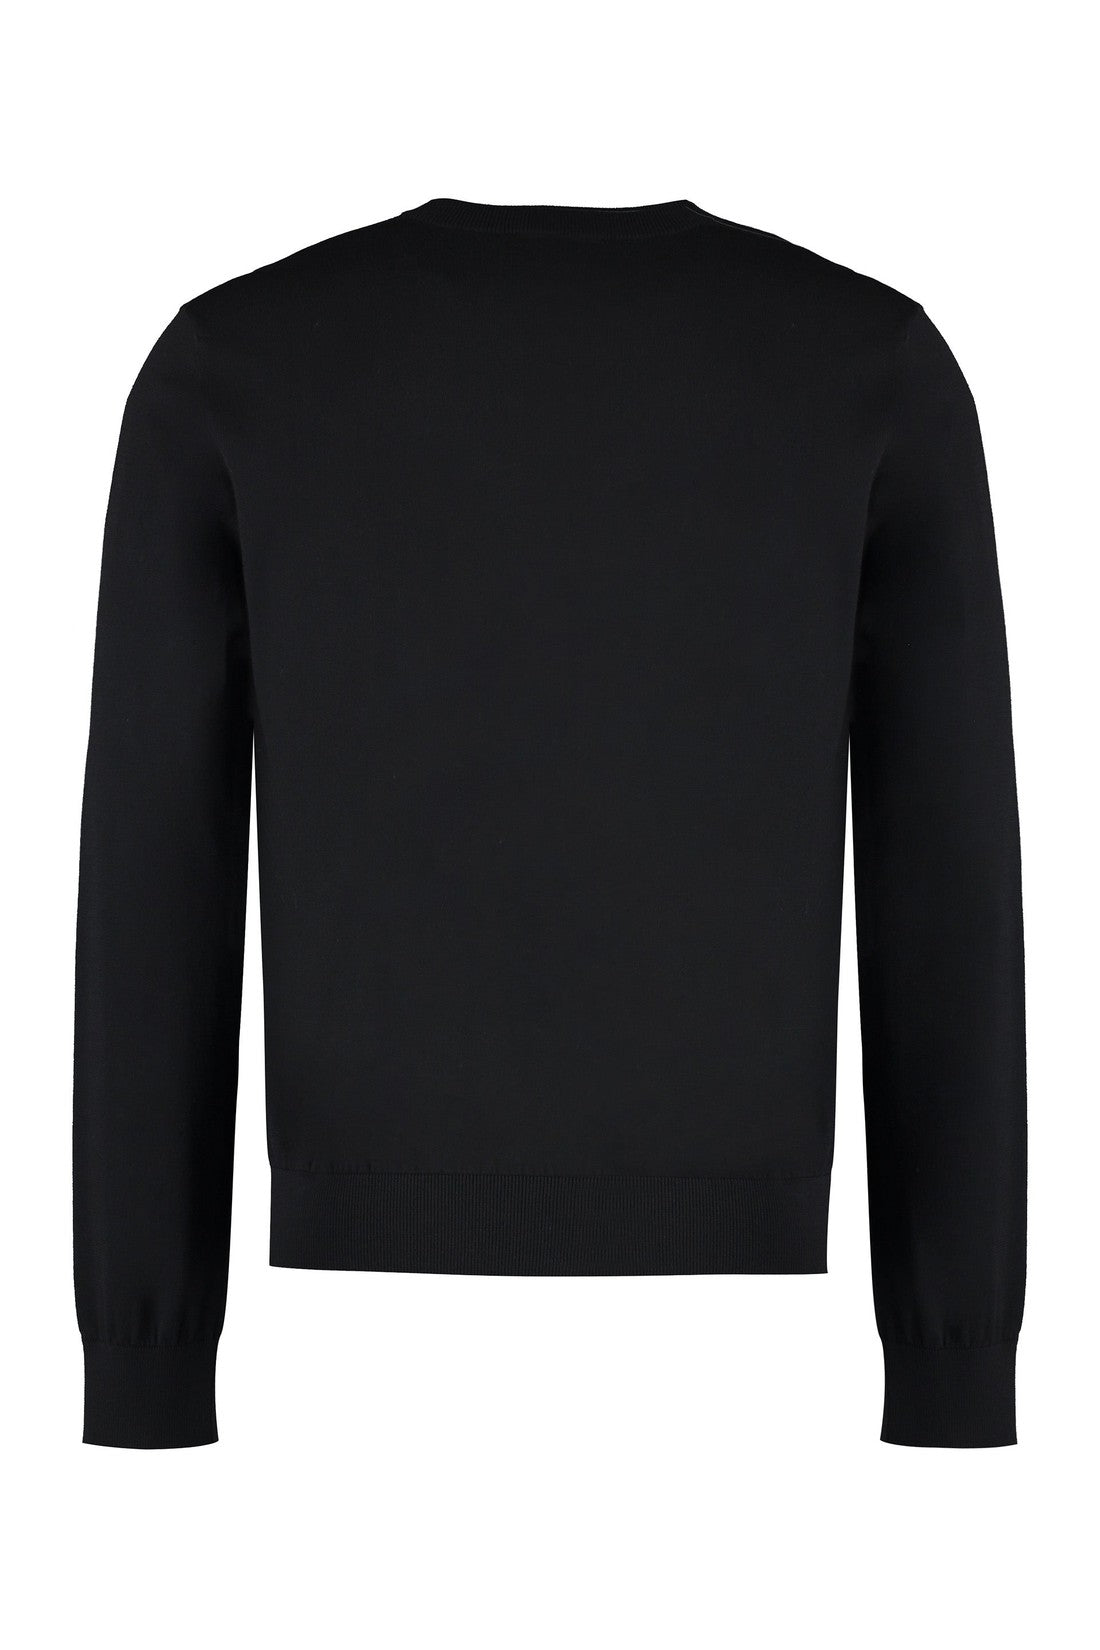 Dsquared2-OUTLET-SALE-Cotton V-neck sweater-ARCHIVIST